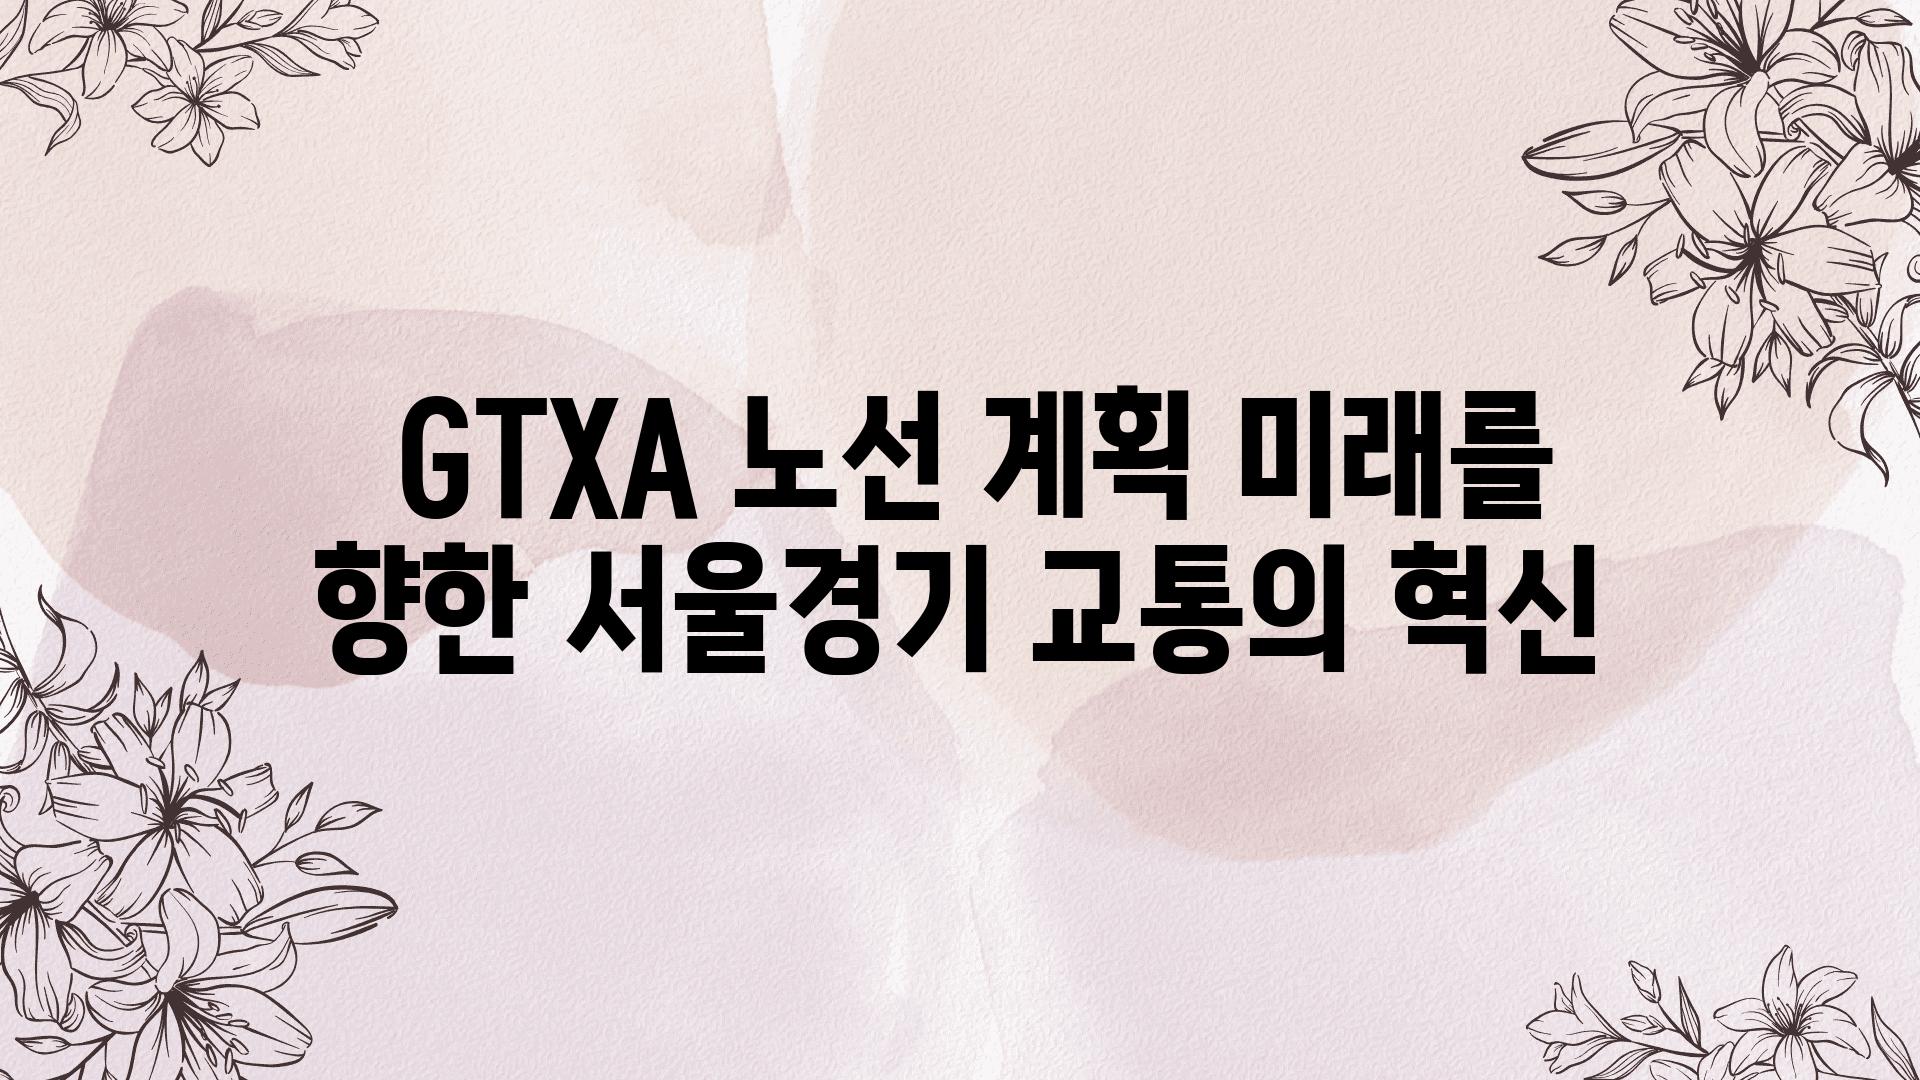  GTXA 노선 계획 미래를 향한 서울경기 교통의 혁신